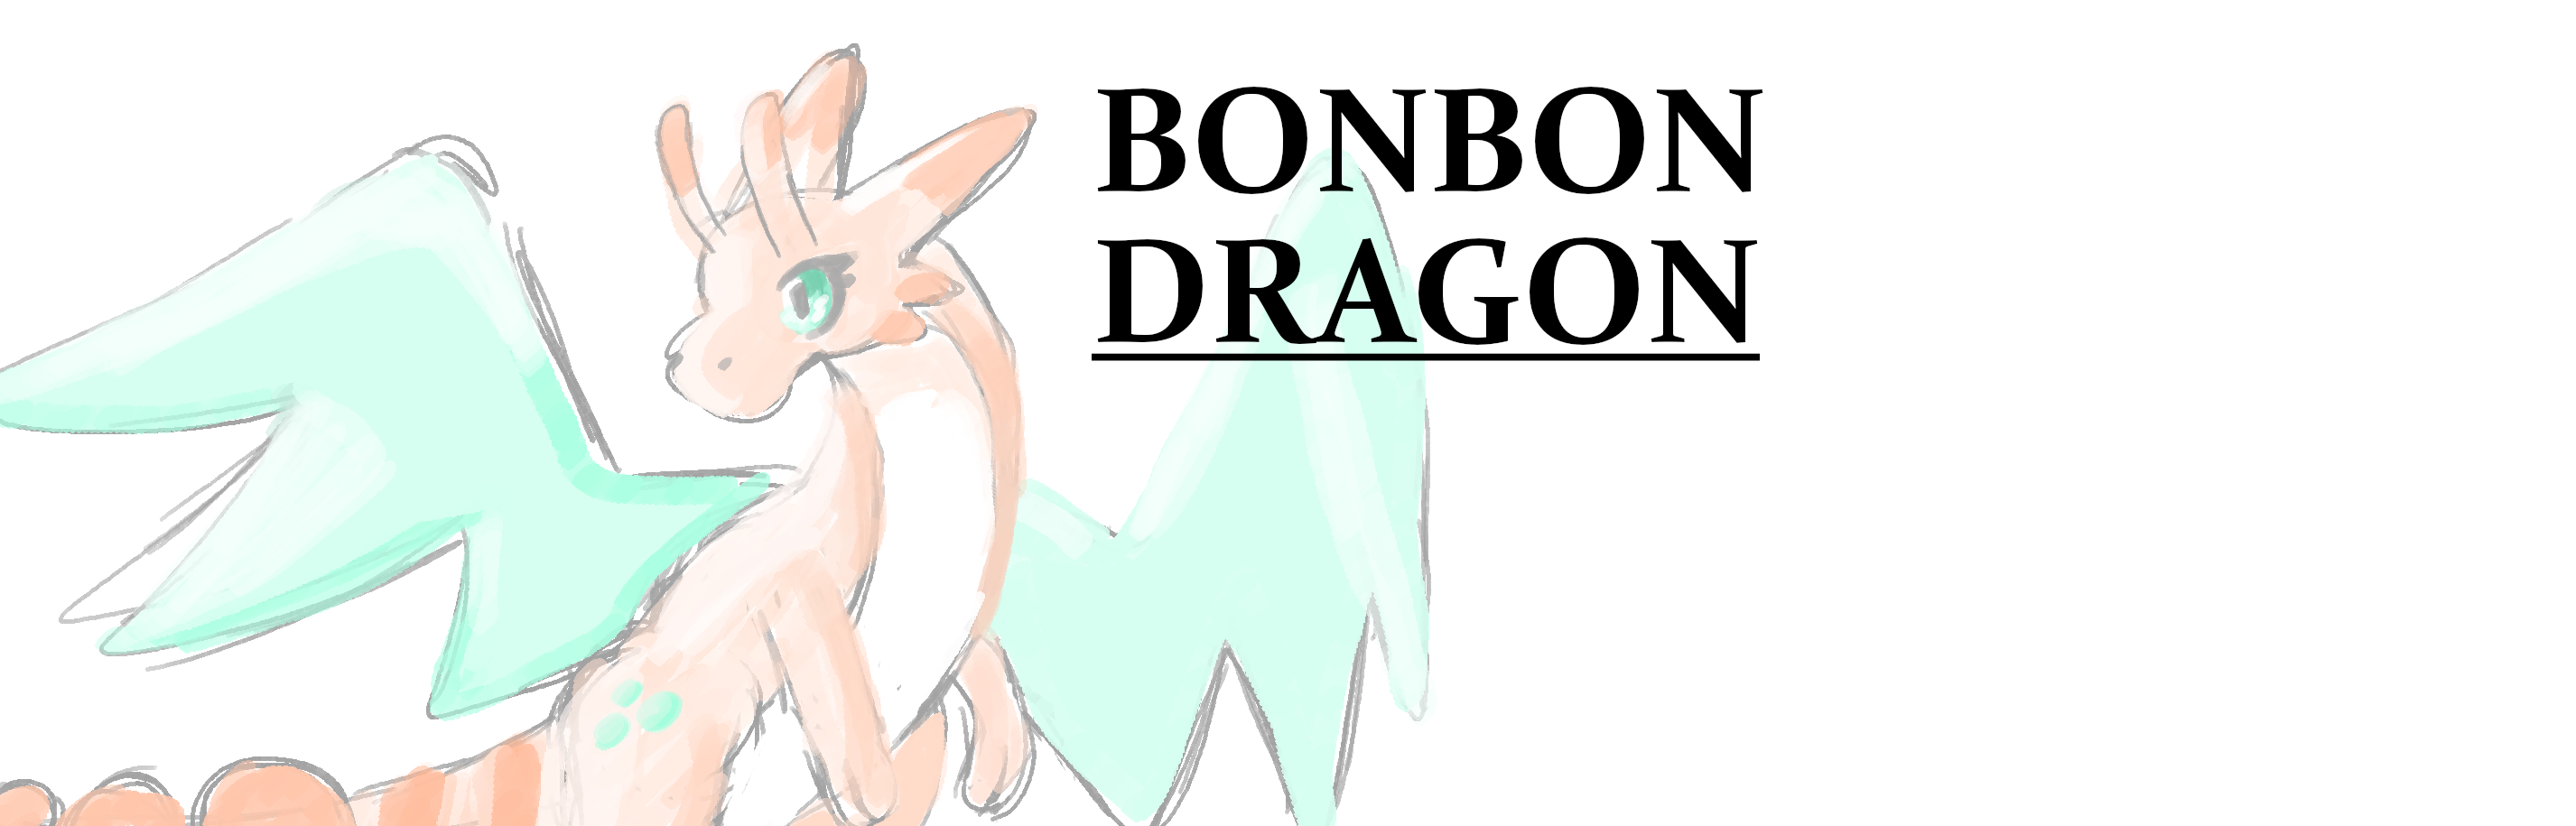 Bonbon Dragon